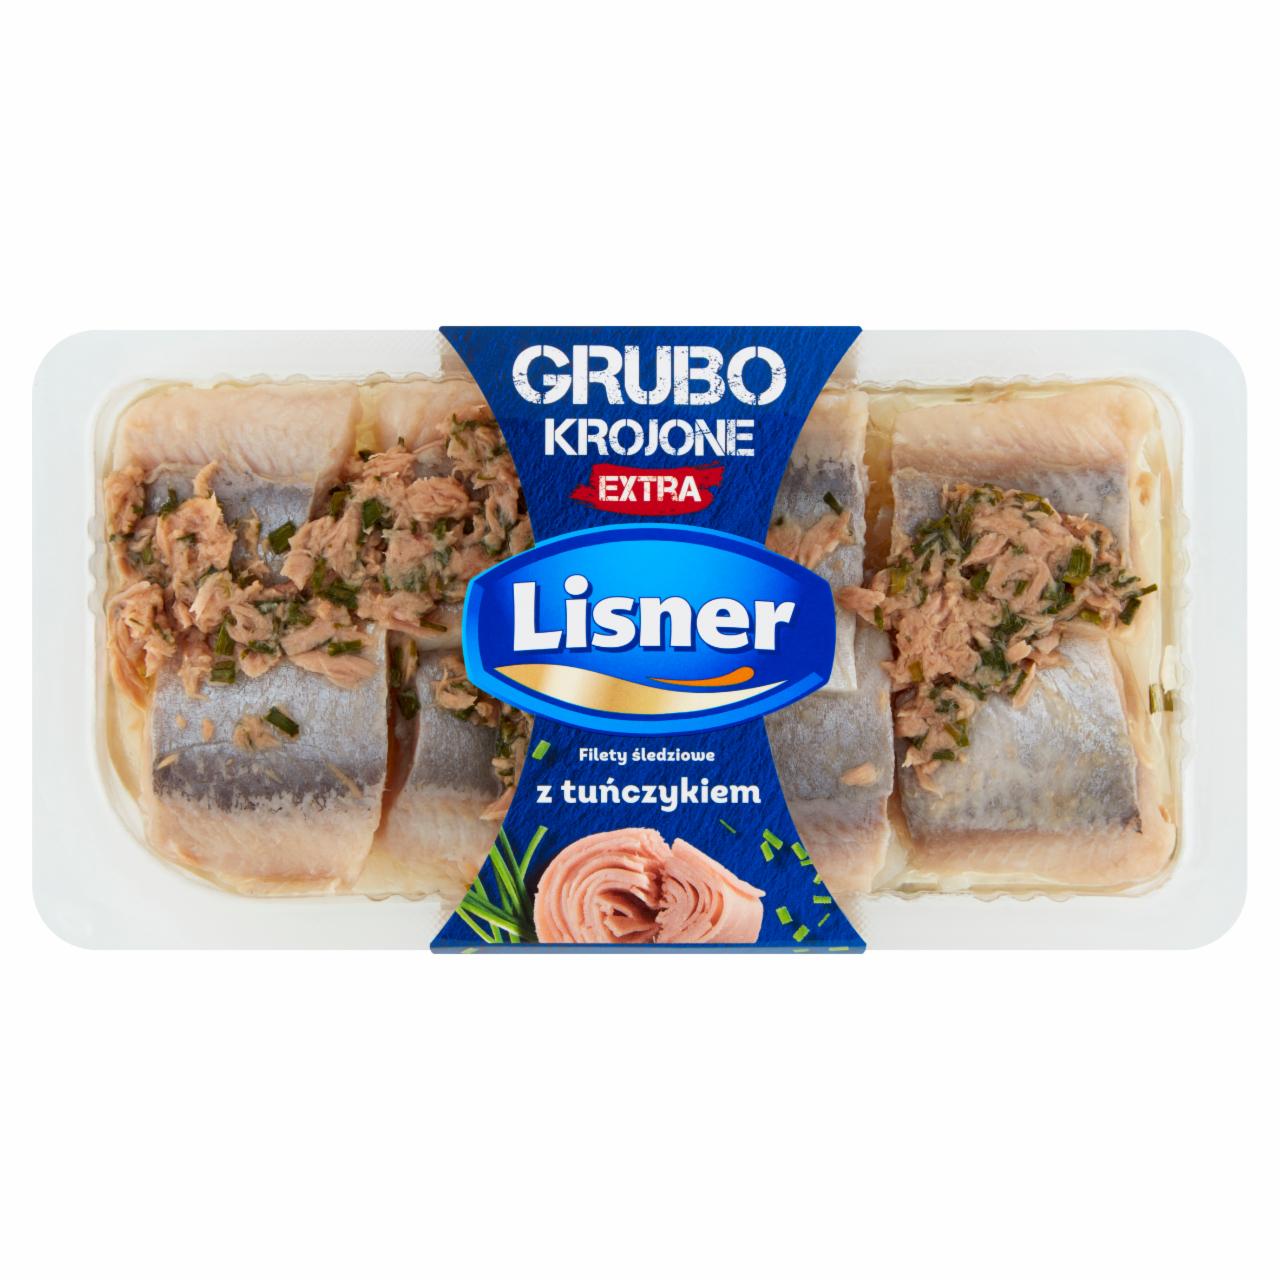 Zdjęcia - Lisner Filety śledziowe z tuńczykiem 200 g